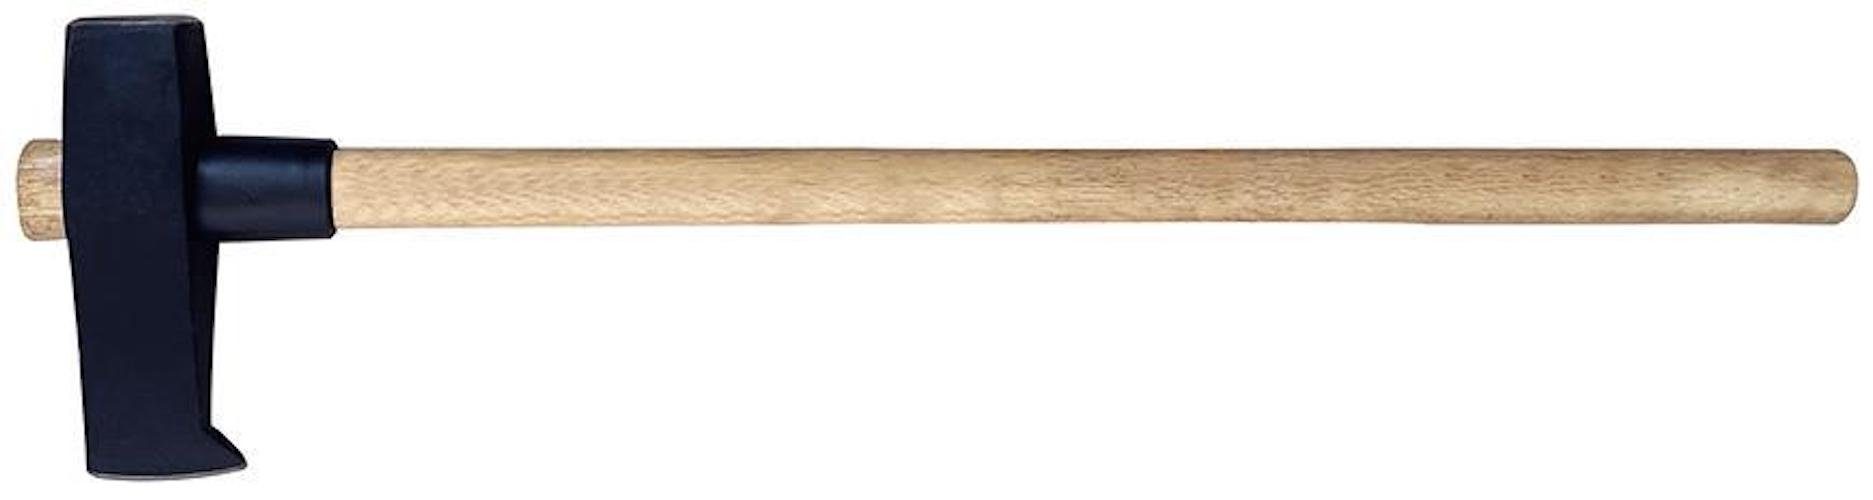 PROREGAL® Hammer Spaltmaul mit Holzgriff 3kg